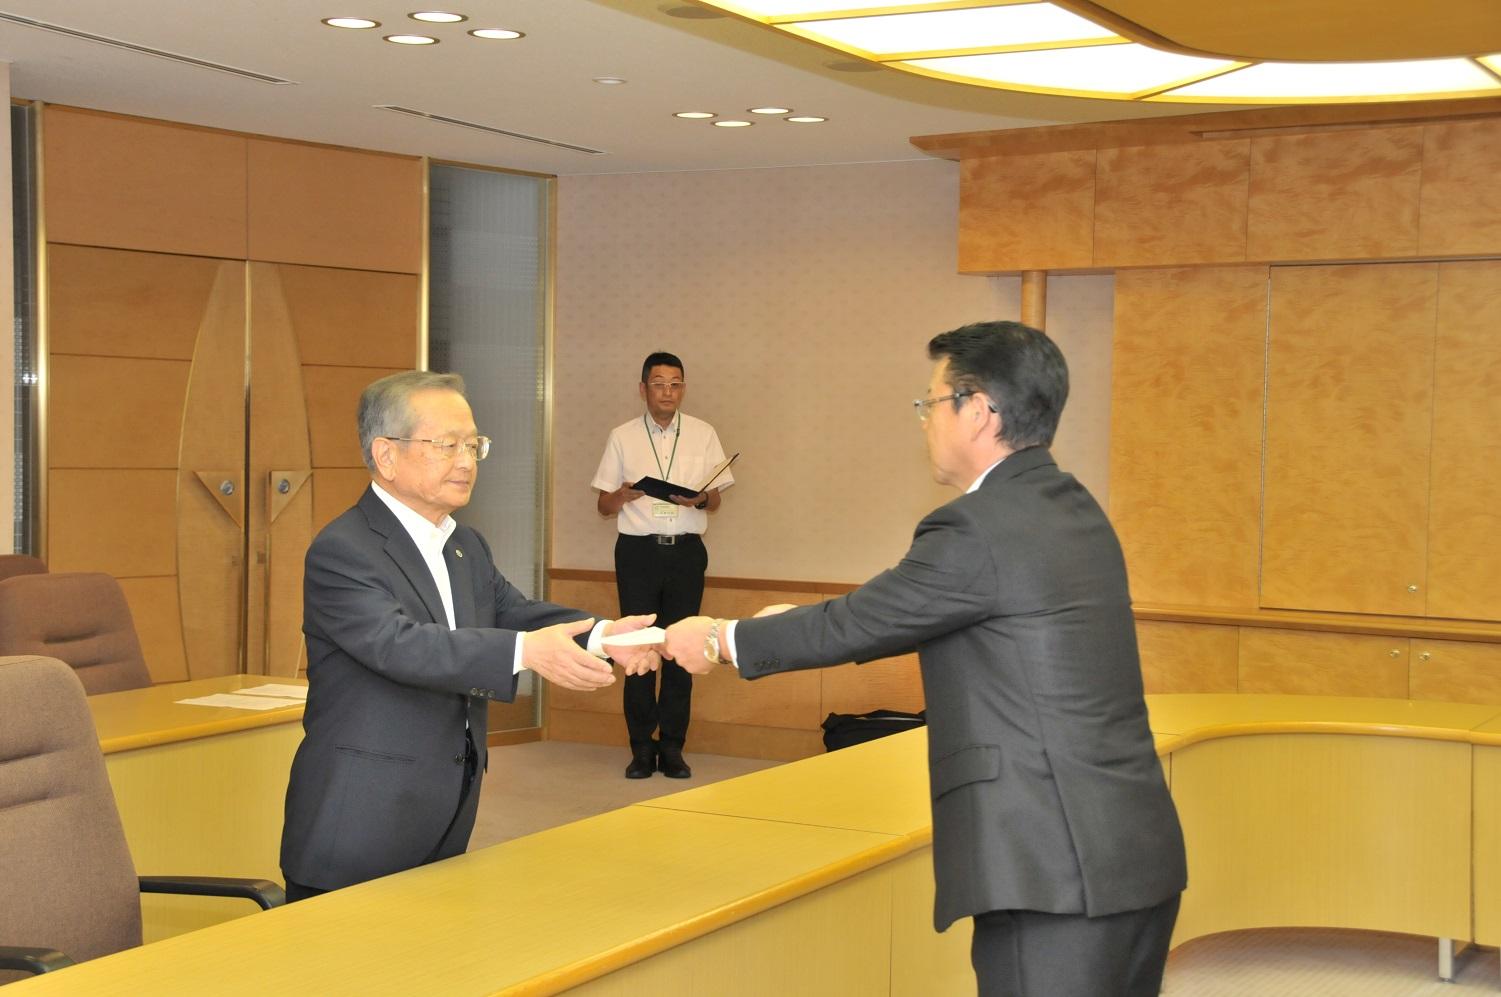 固定資産評価審査委員会委員の新任委員である松屋永久さんと伊東市長の写真